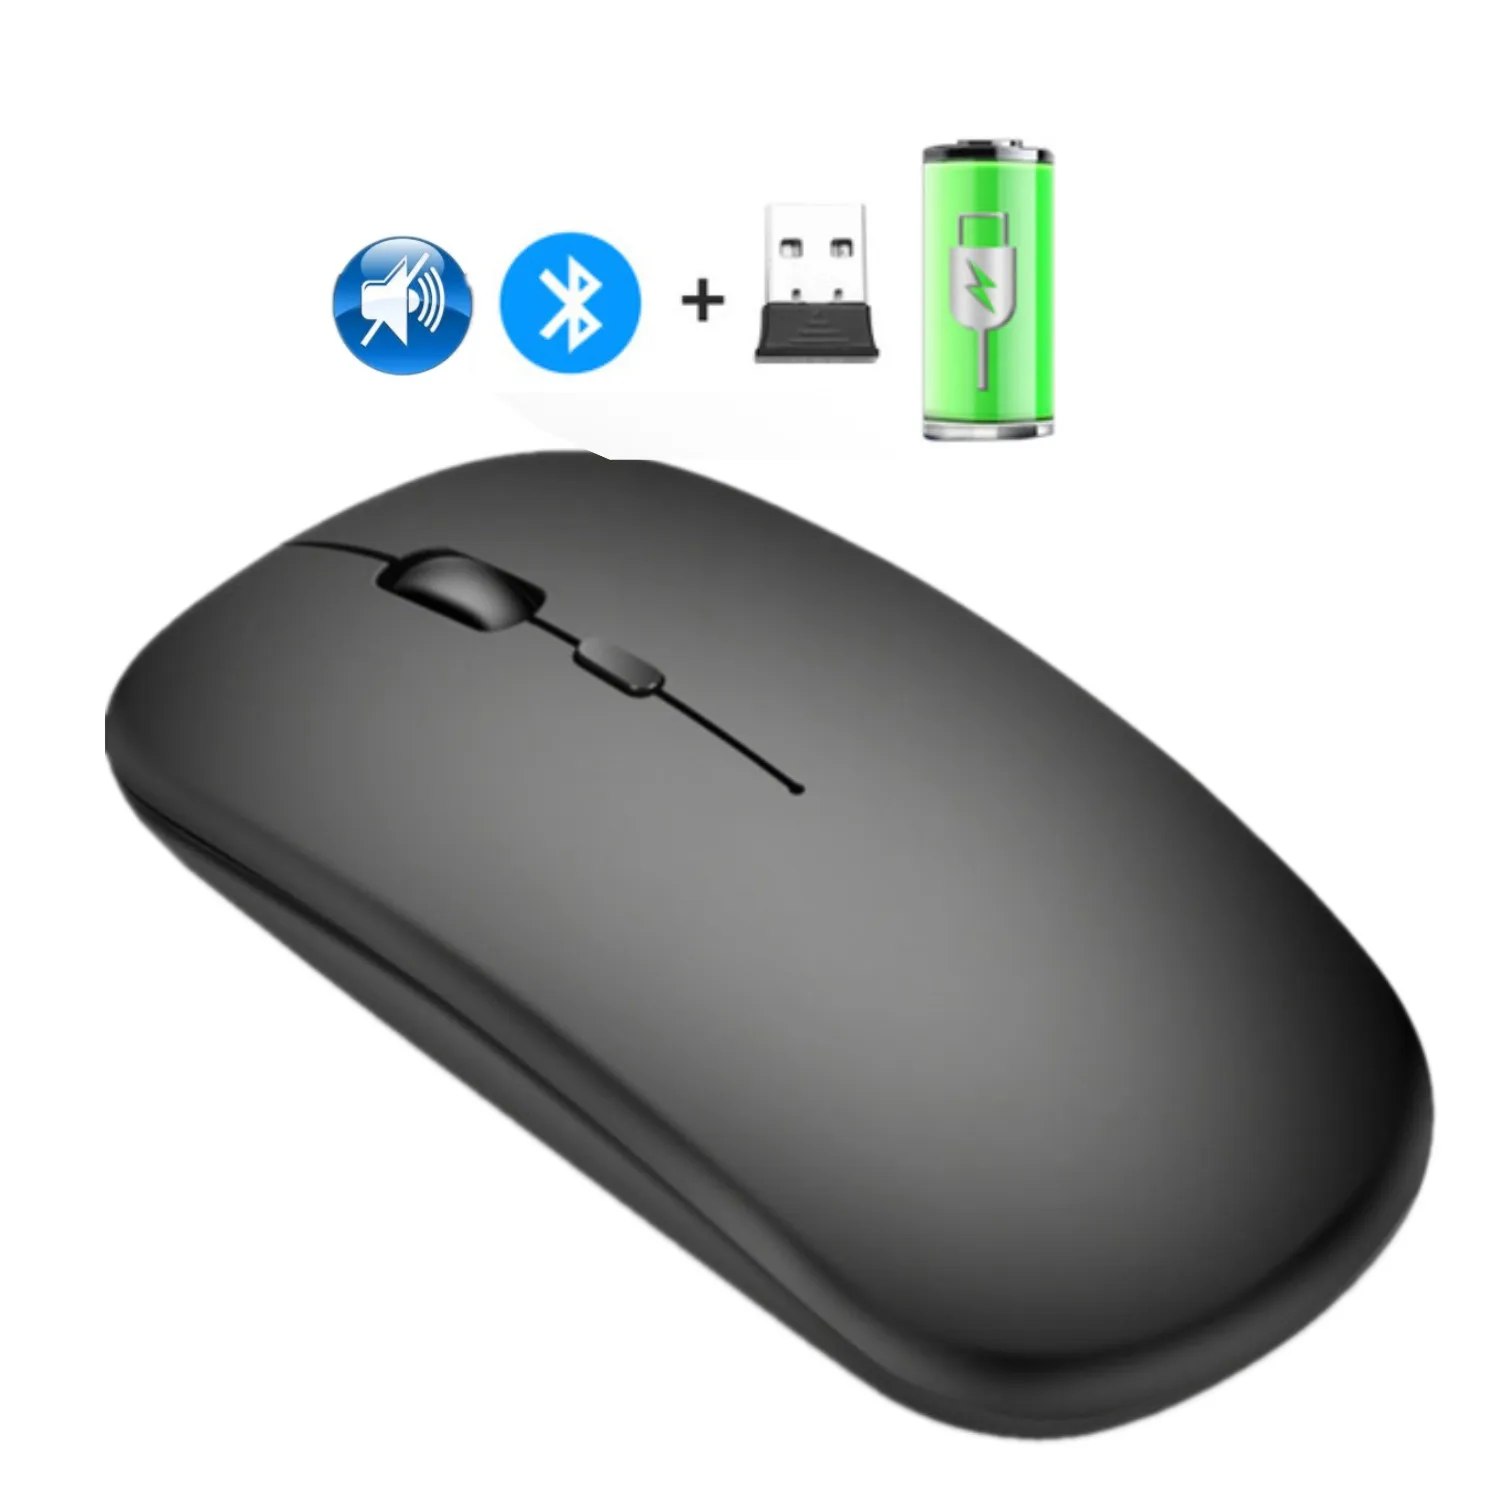 

Мышь Компьютерная аккумуляторная беспроводная, эргономичная Бесшумная Bluetooth мышь для ноутбука, ПК, Macbook, Xiaomi, два режима